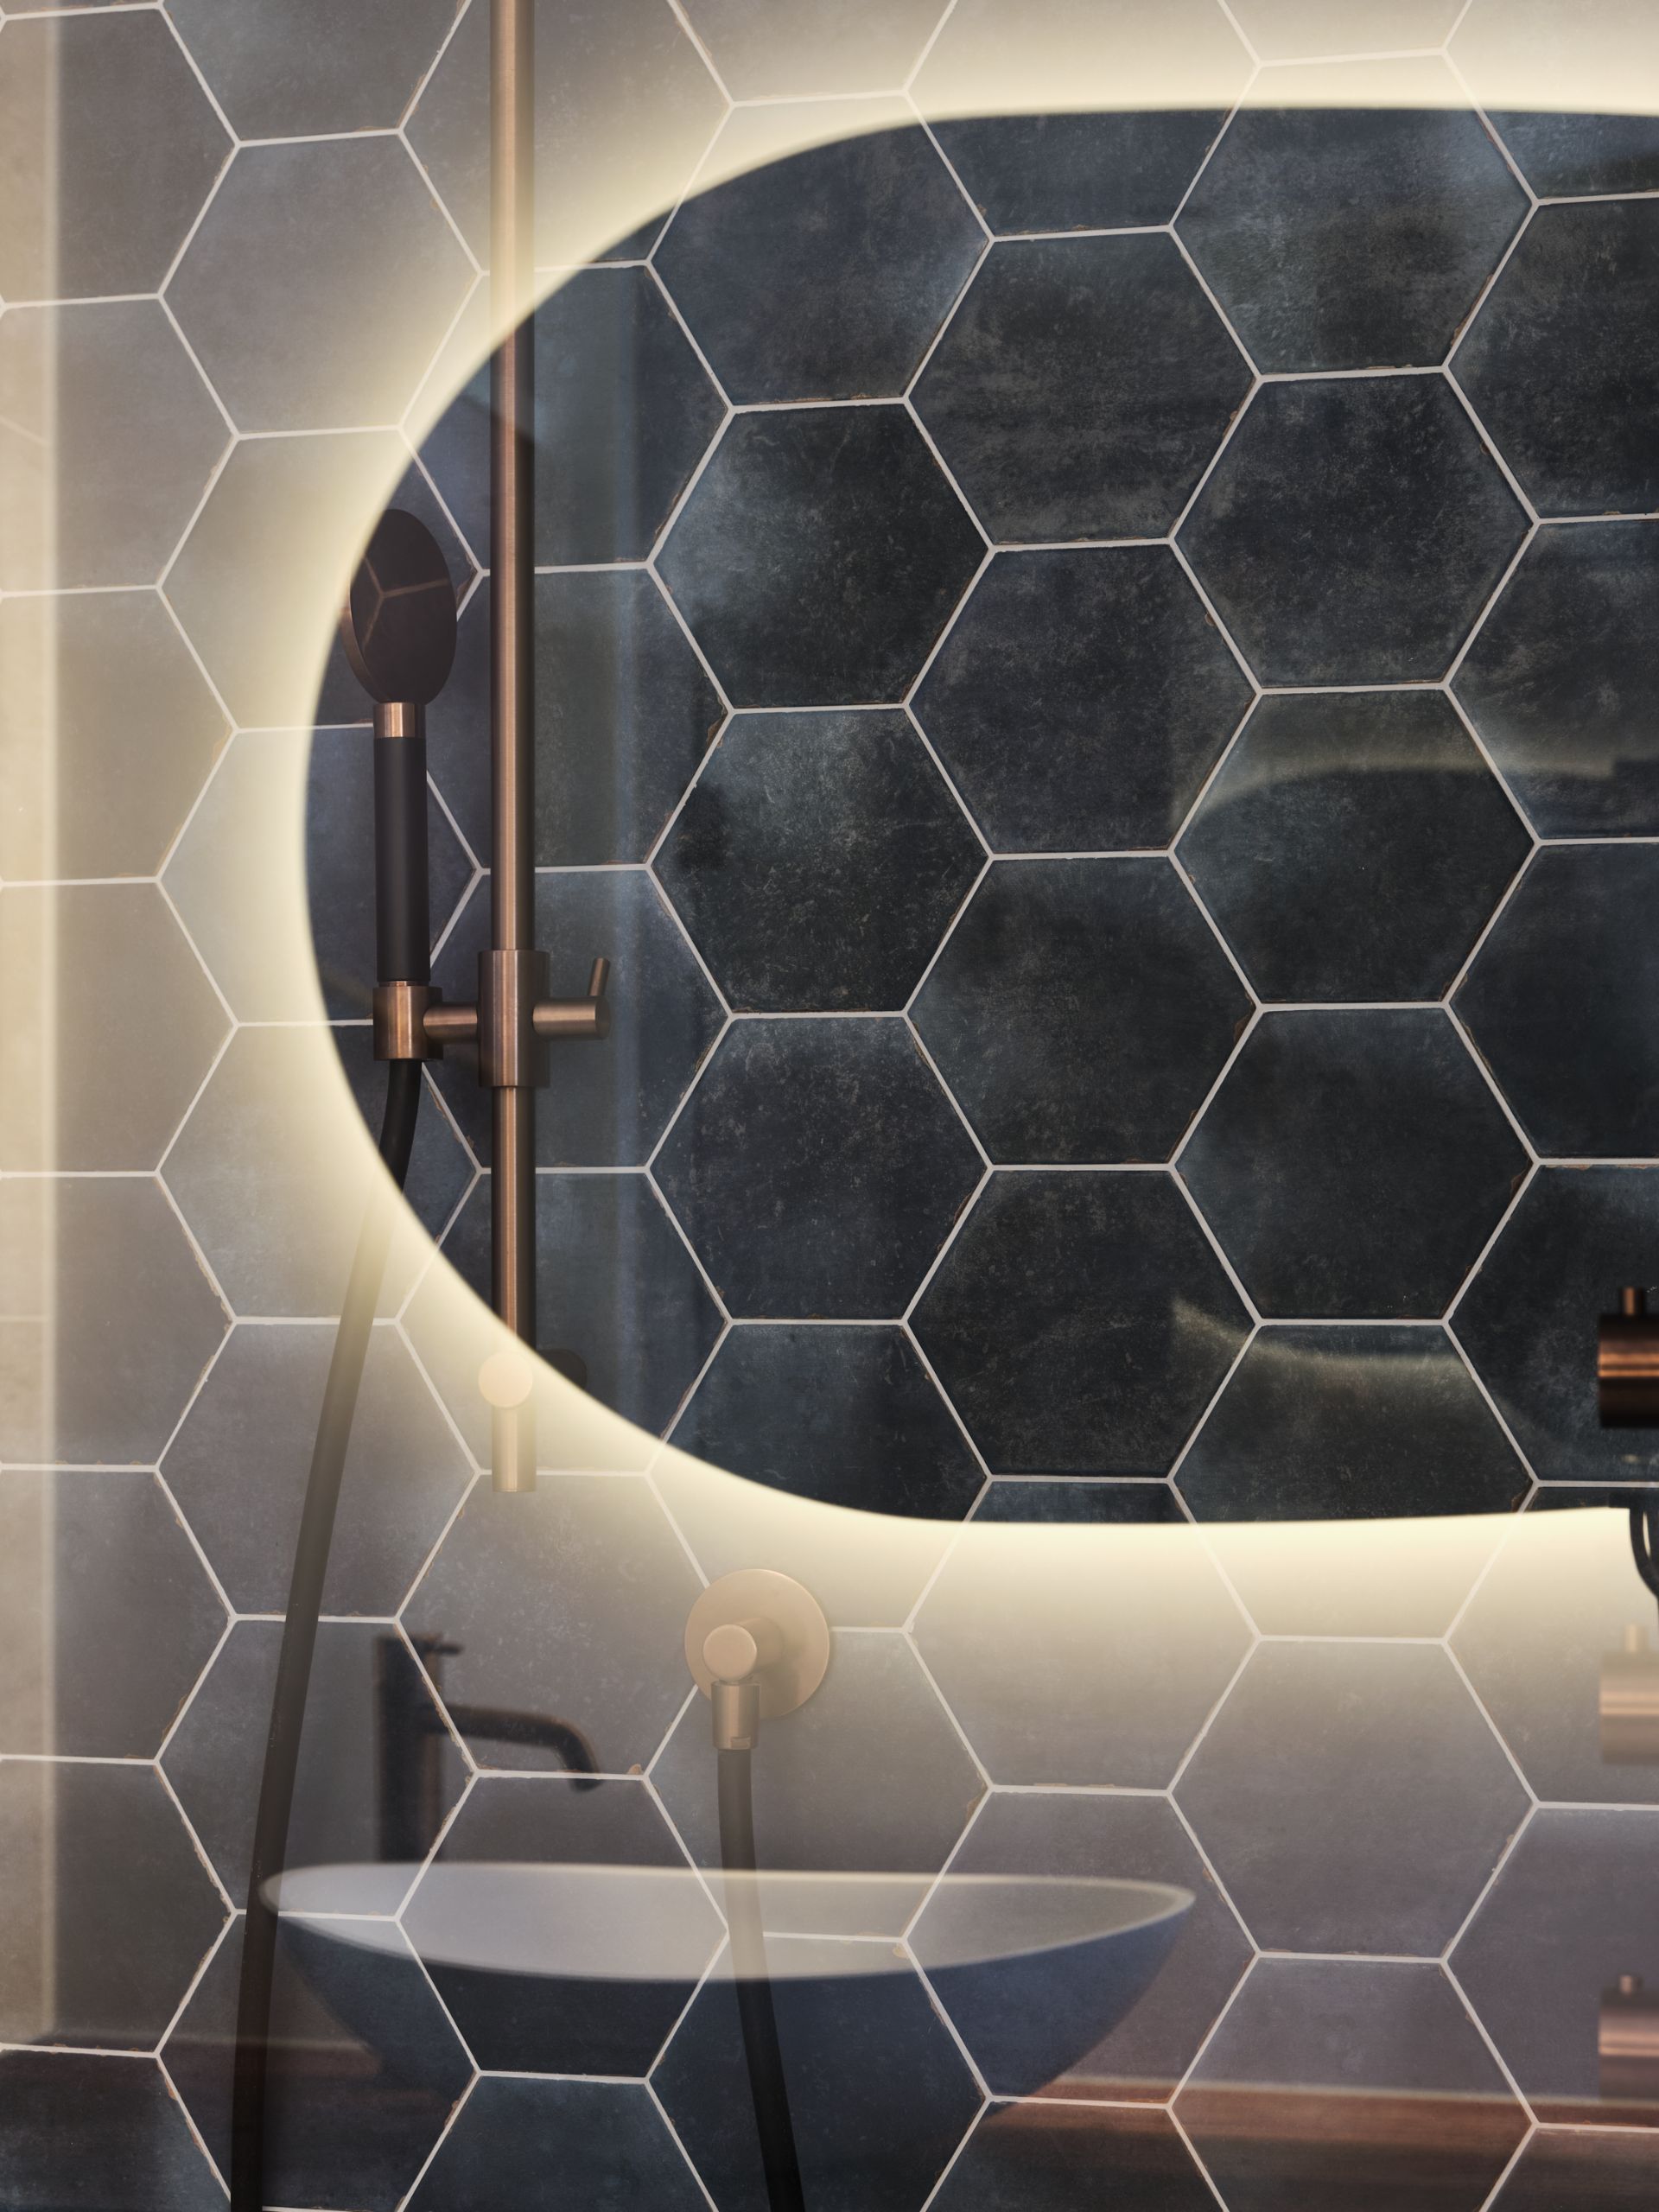 Foto: een frisse look met blauwe hexagon tegels    eerste kamer badkamers   007